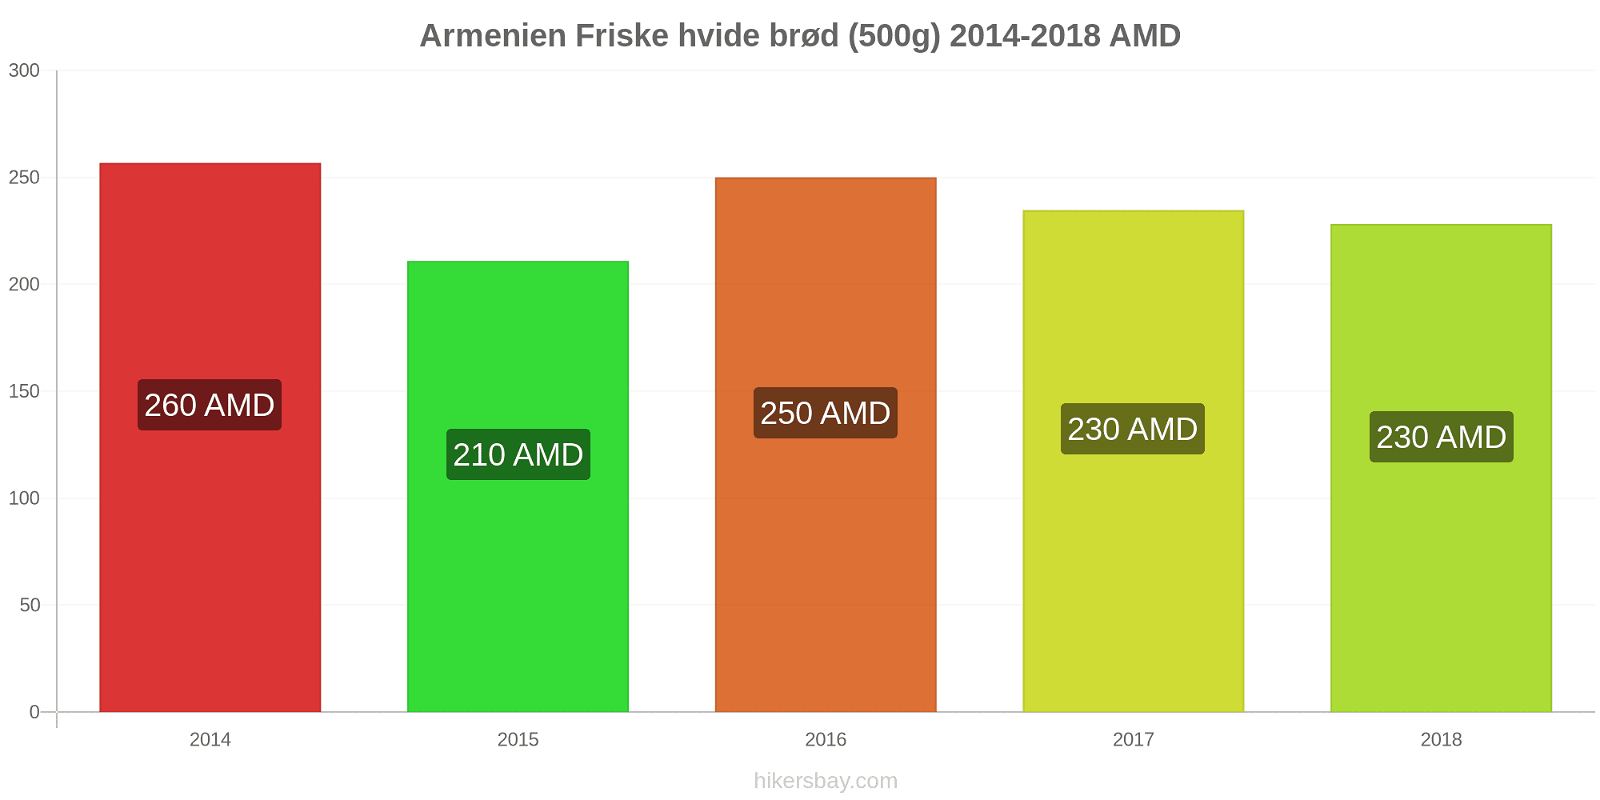 Armenien prisændringer Friske hvide brød (500g) hikersbay.com